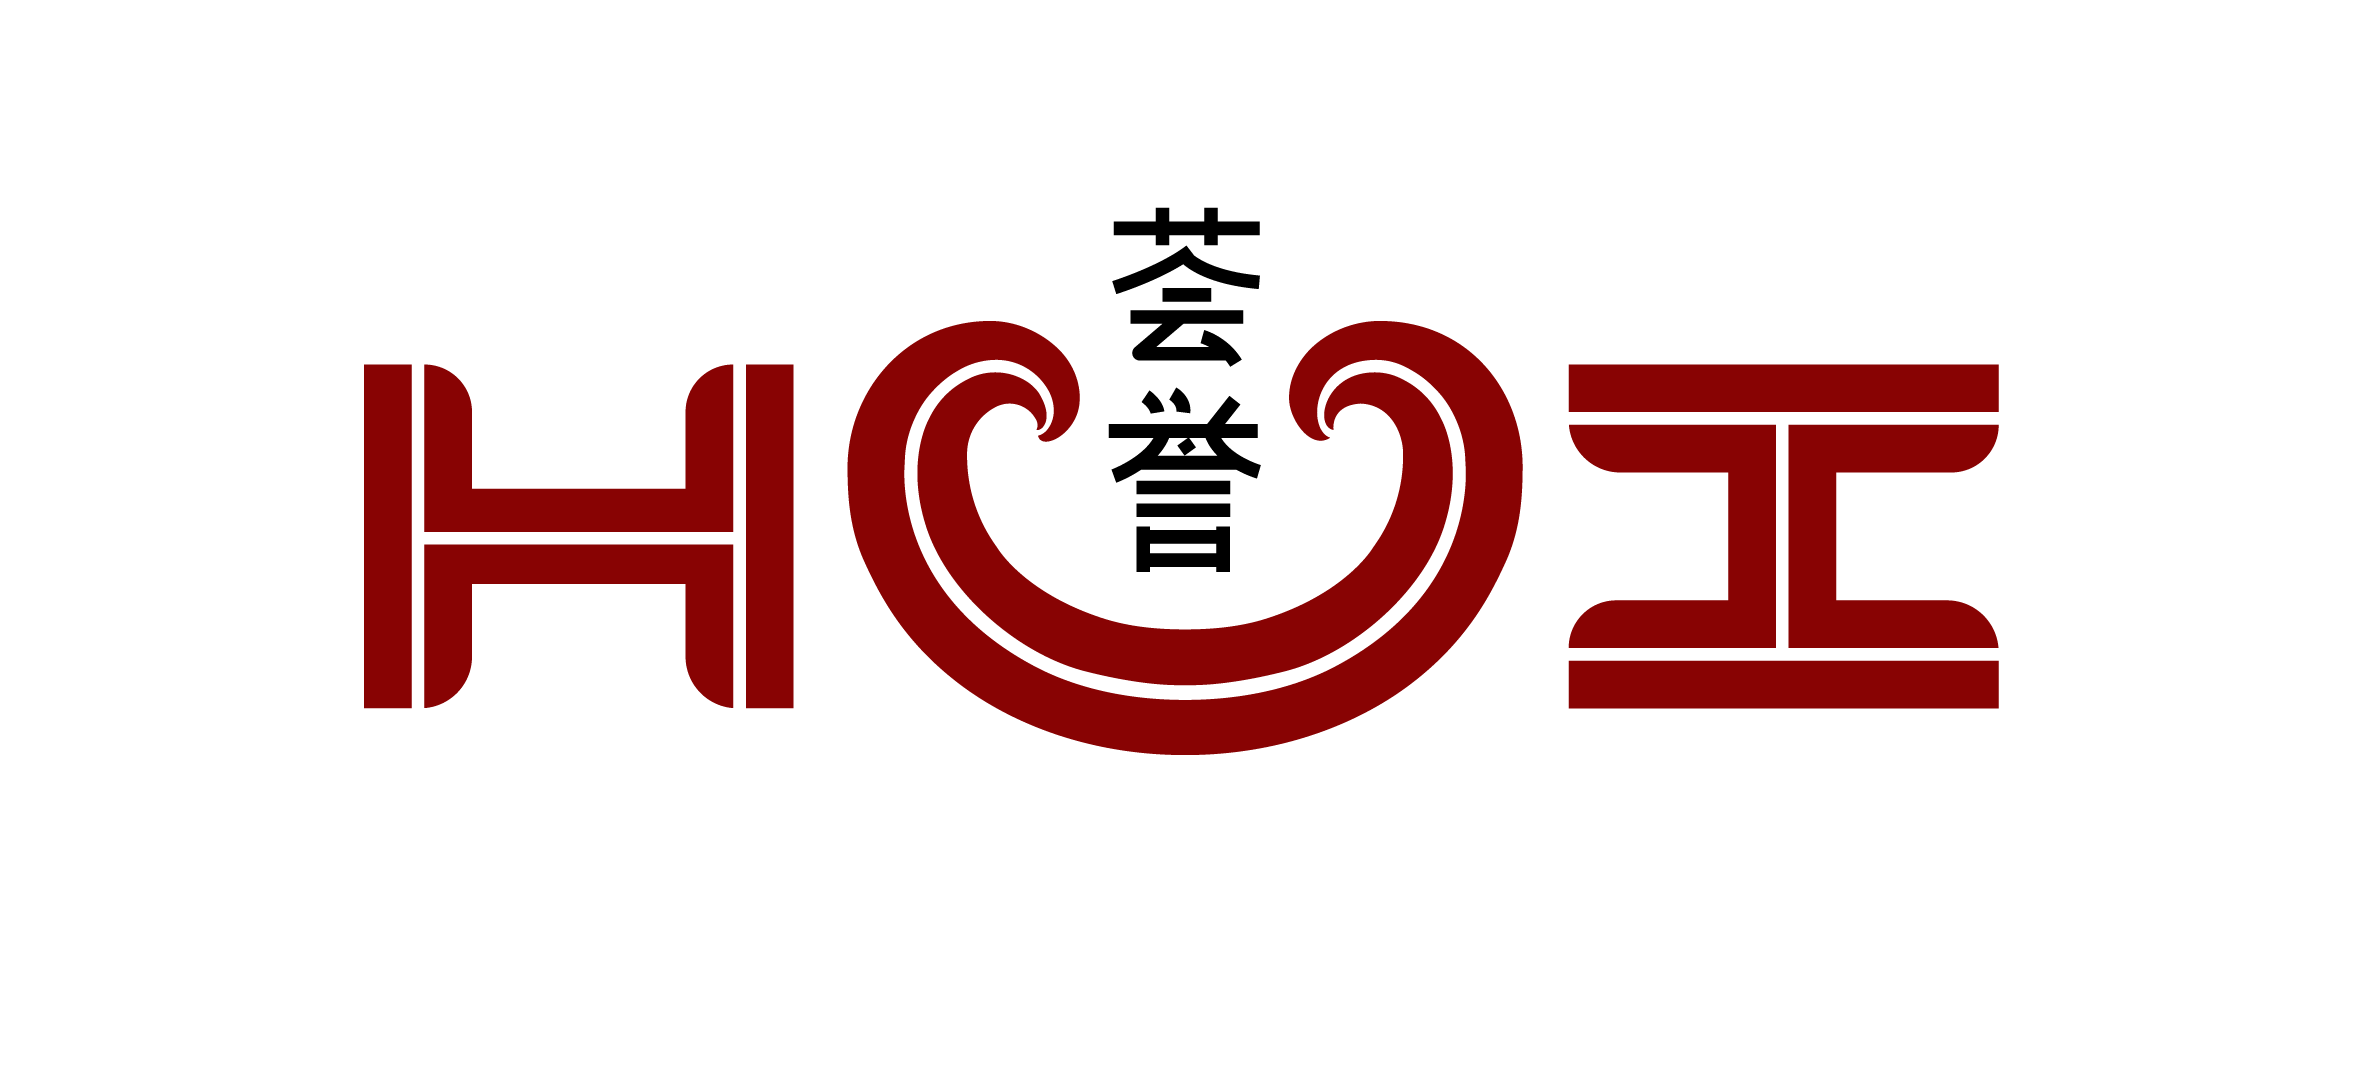 Hui Logo - HUI